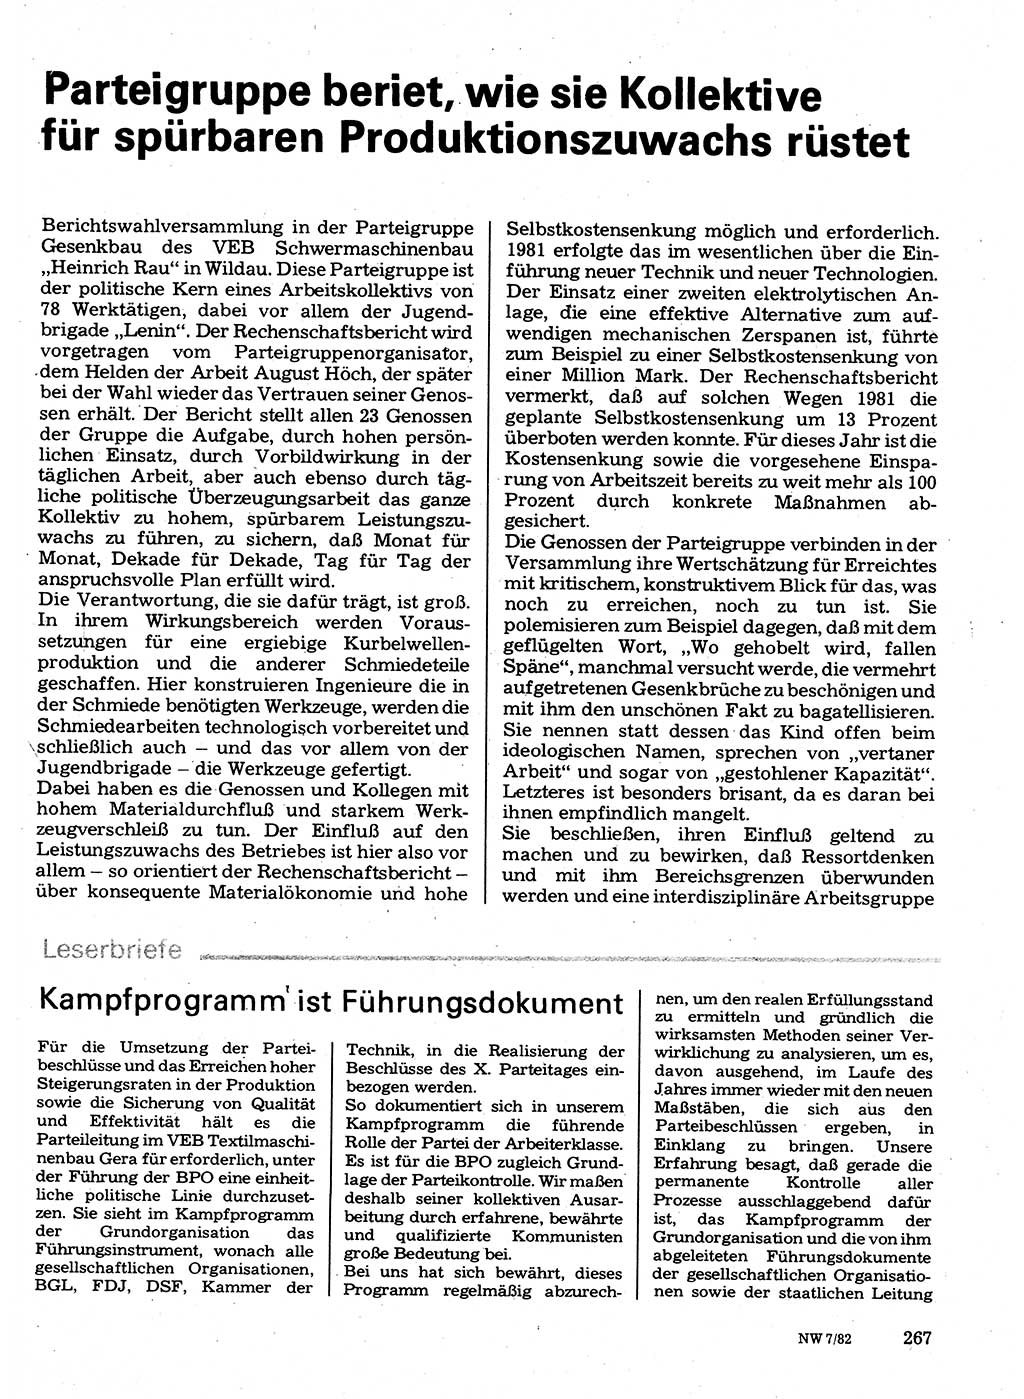 Neuer Weg (NW), Organ des Zentralkomitees (ZK) der SED (Sozialistische Einheitspartei Deutschlands) für Fragen des Parteilebens, 37. Jahrgang [Deutsche Demokratische Republik (DDR)] 1982, Seite 267 (NW ZK SED DDR 1982, S. 267)